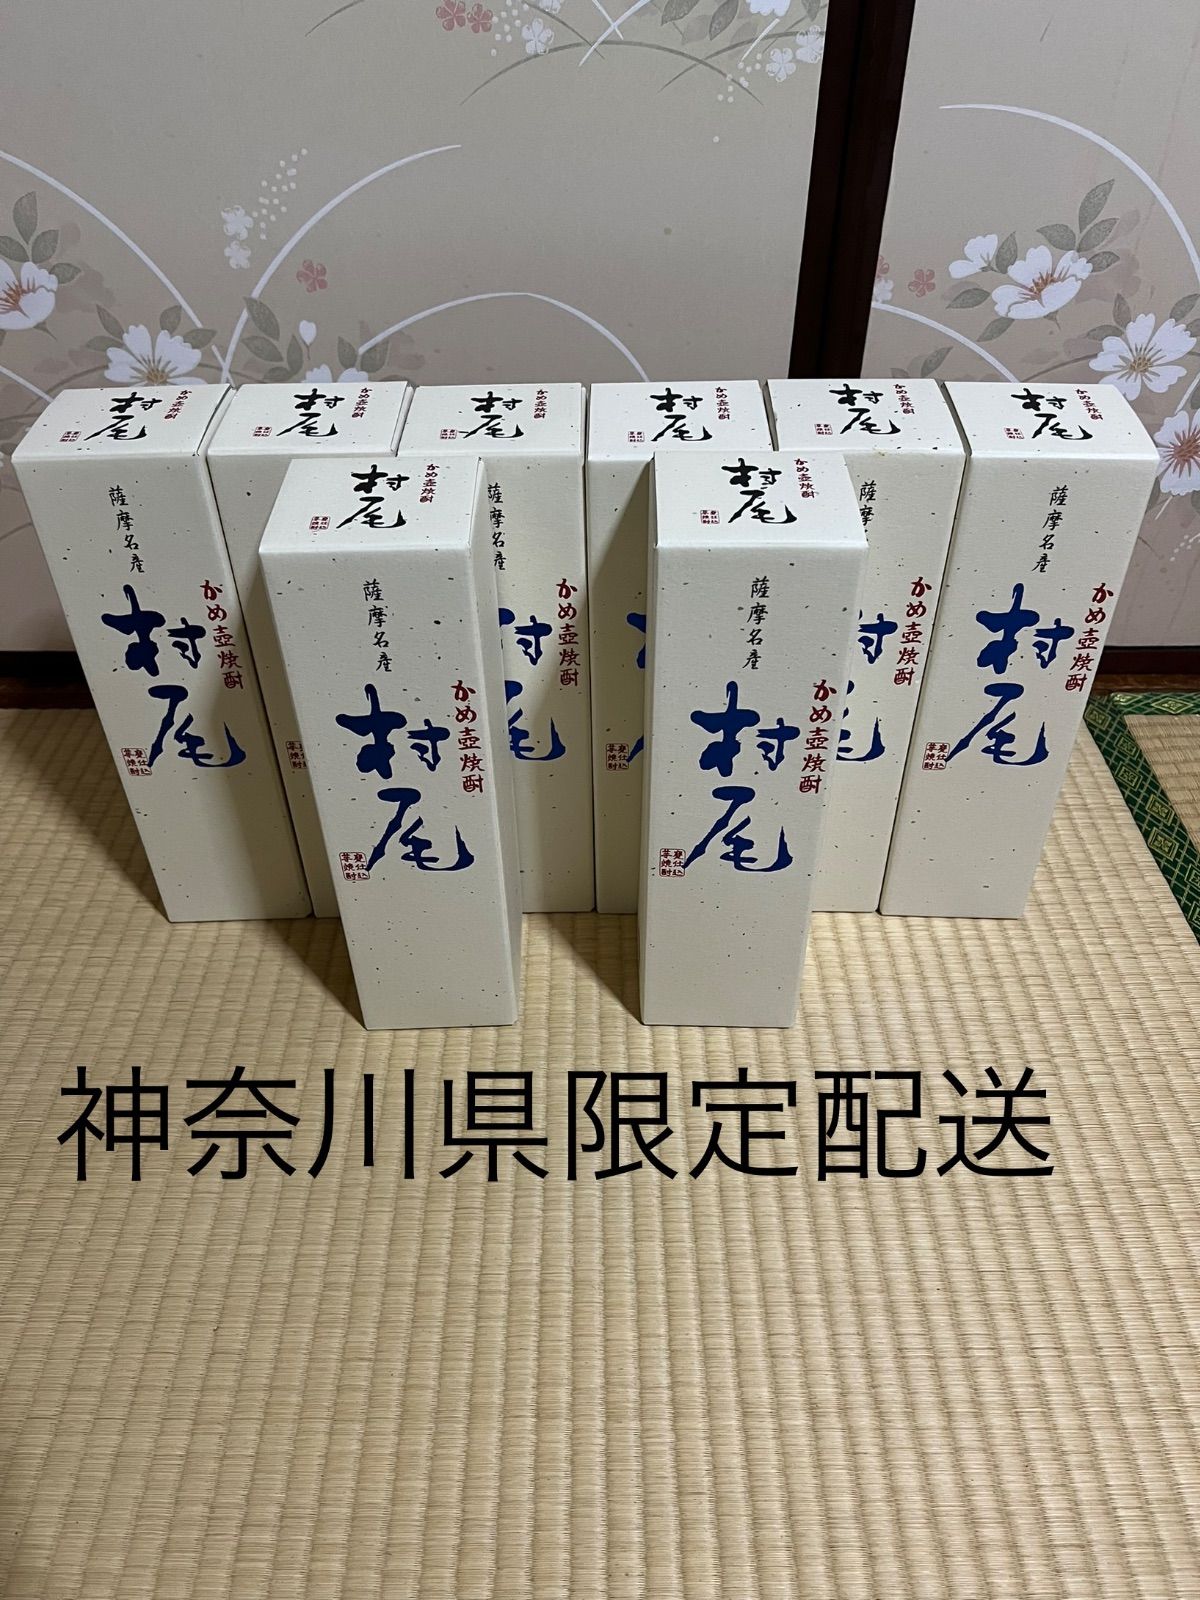 村尾 ANA国際線 機内販売品 5本 - 焼酎